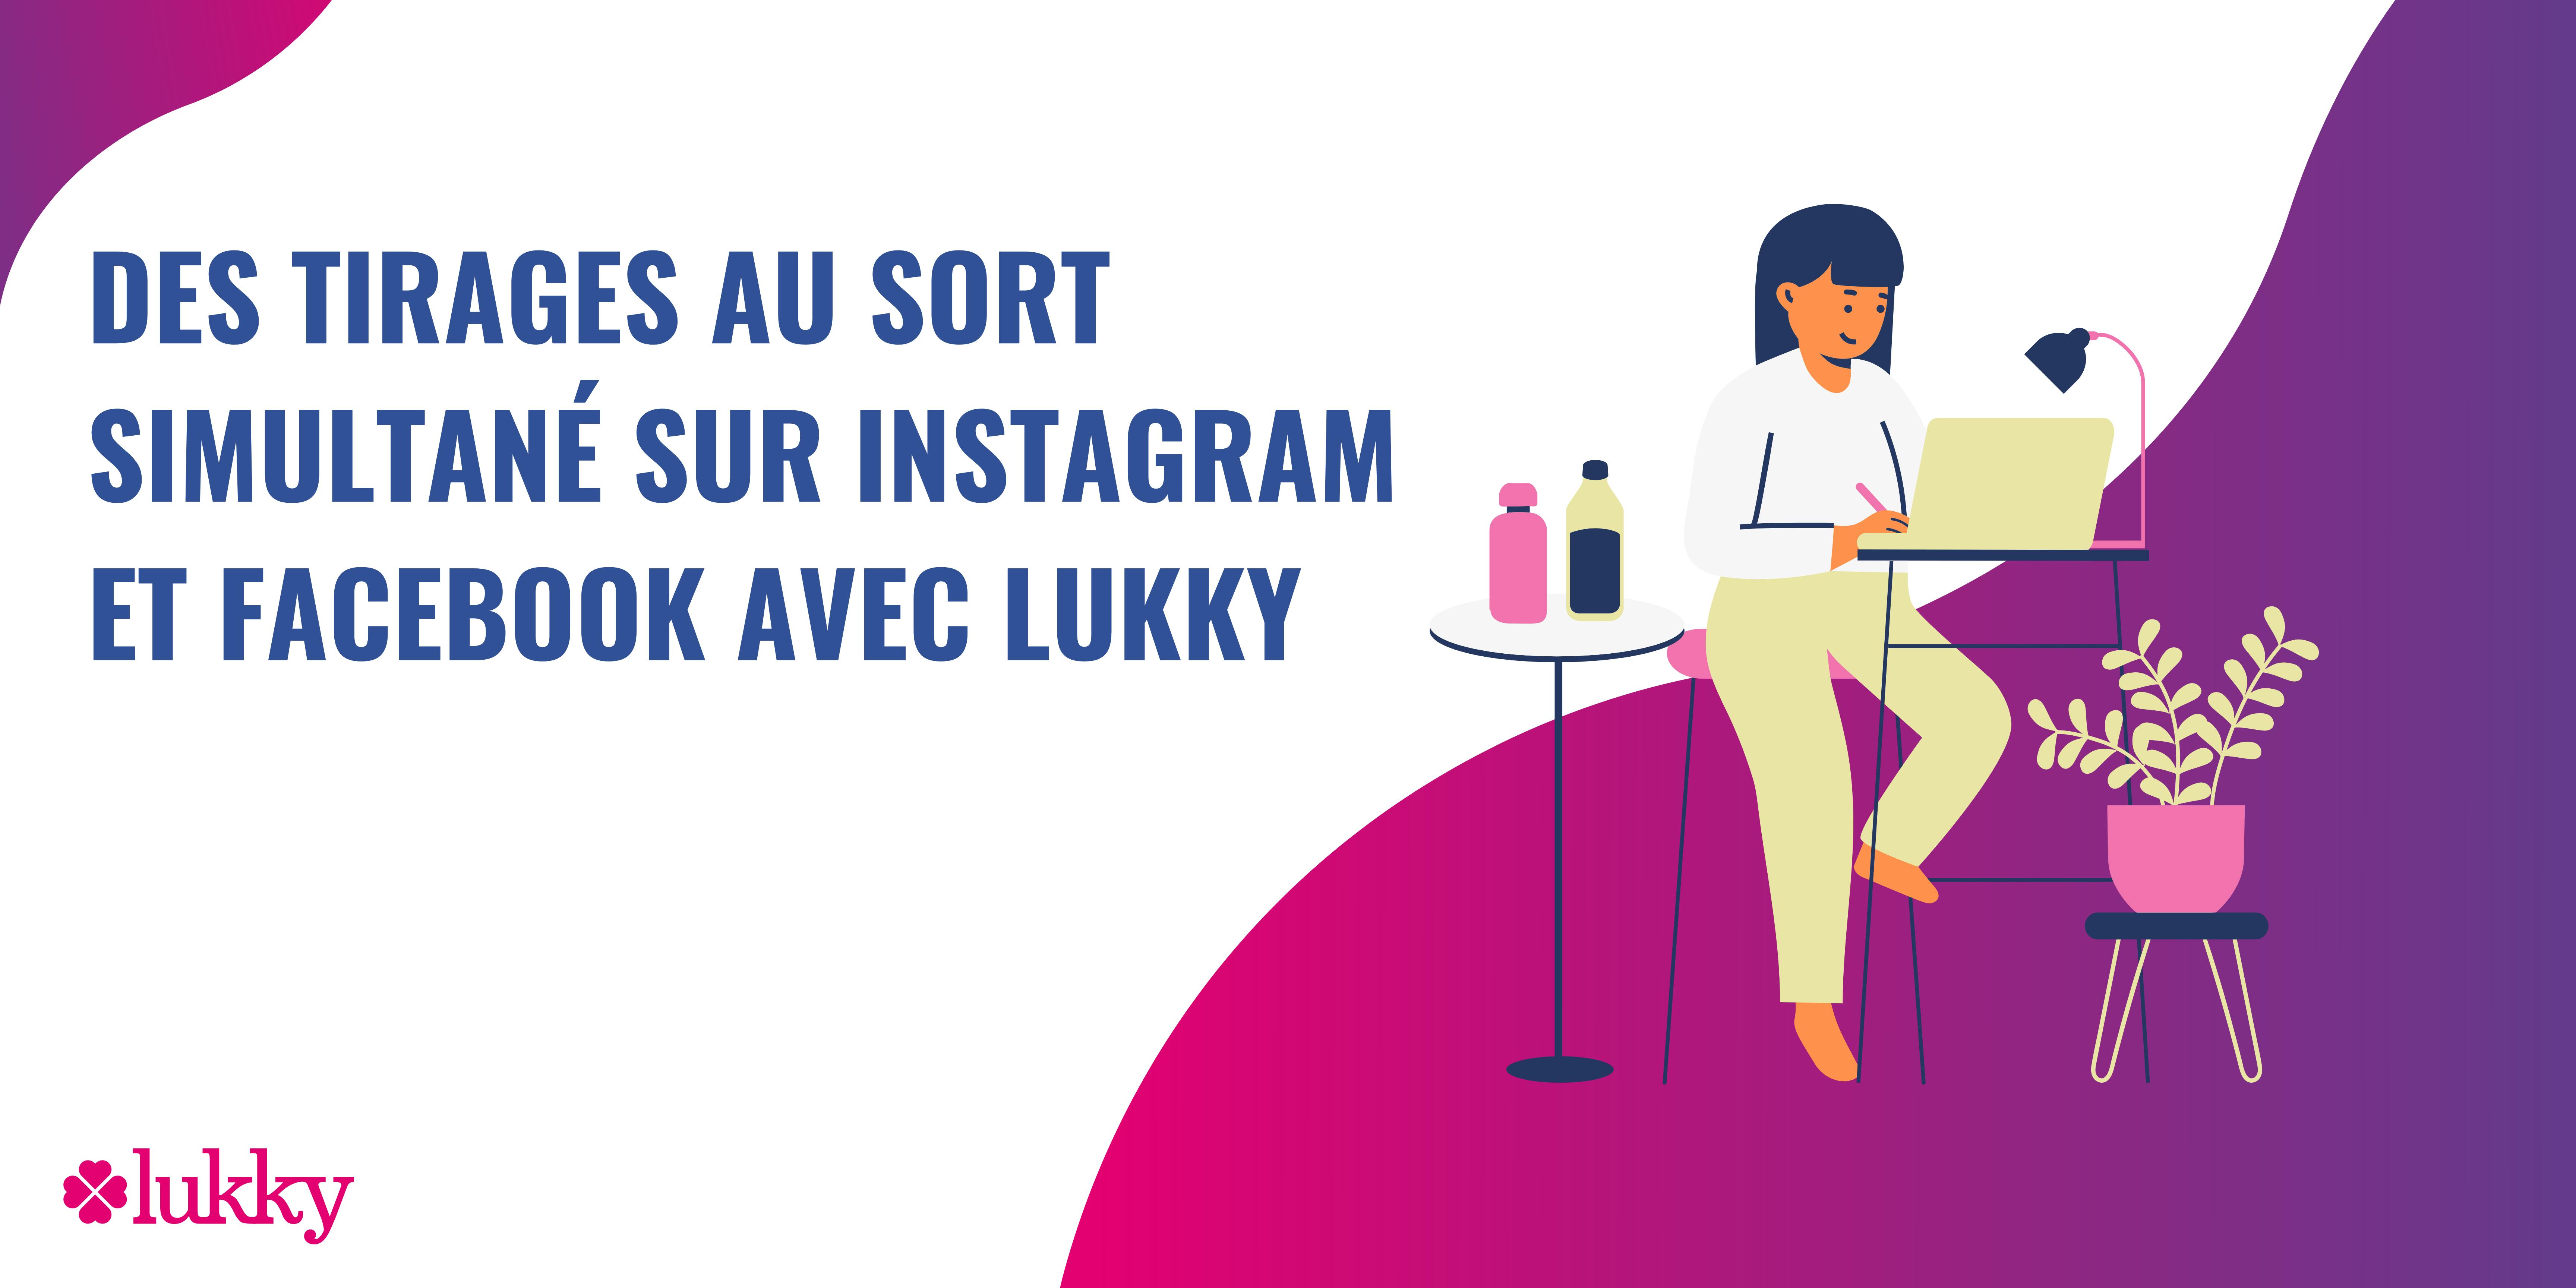 Des tirages au sort simultané sur Instagram et Facebook avec Lukky